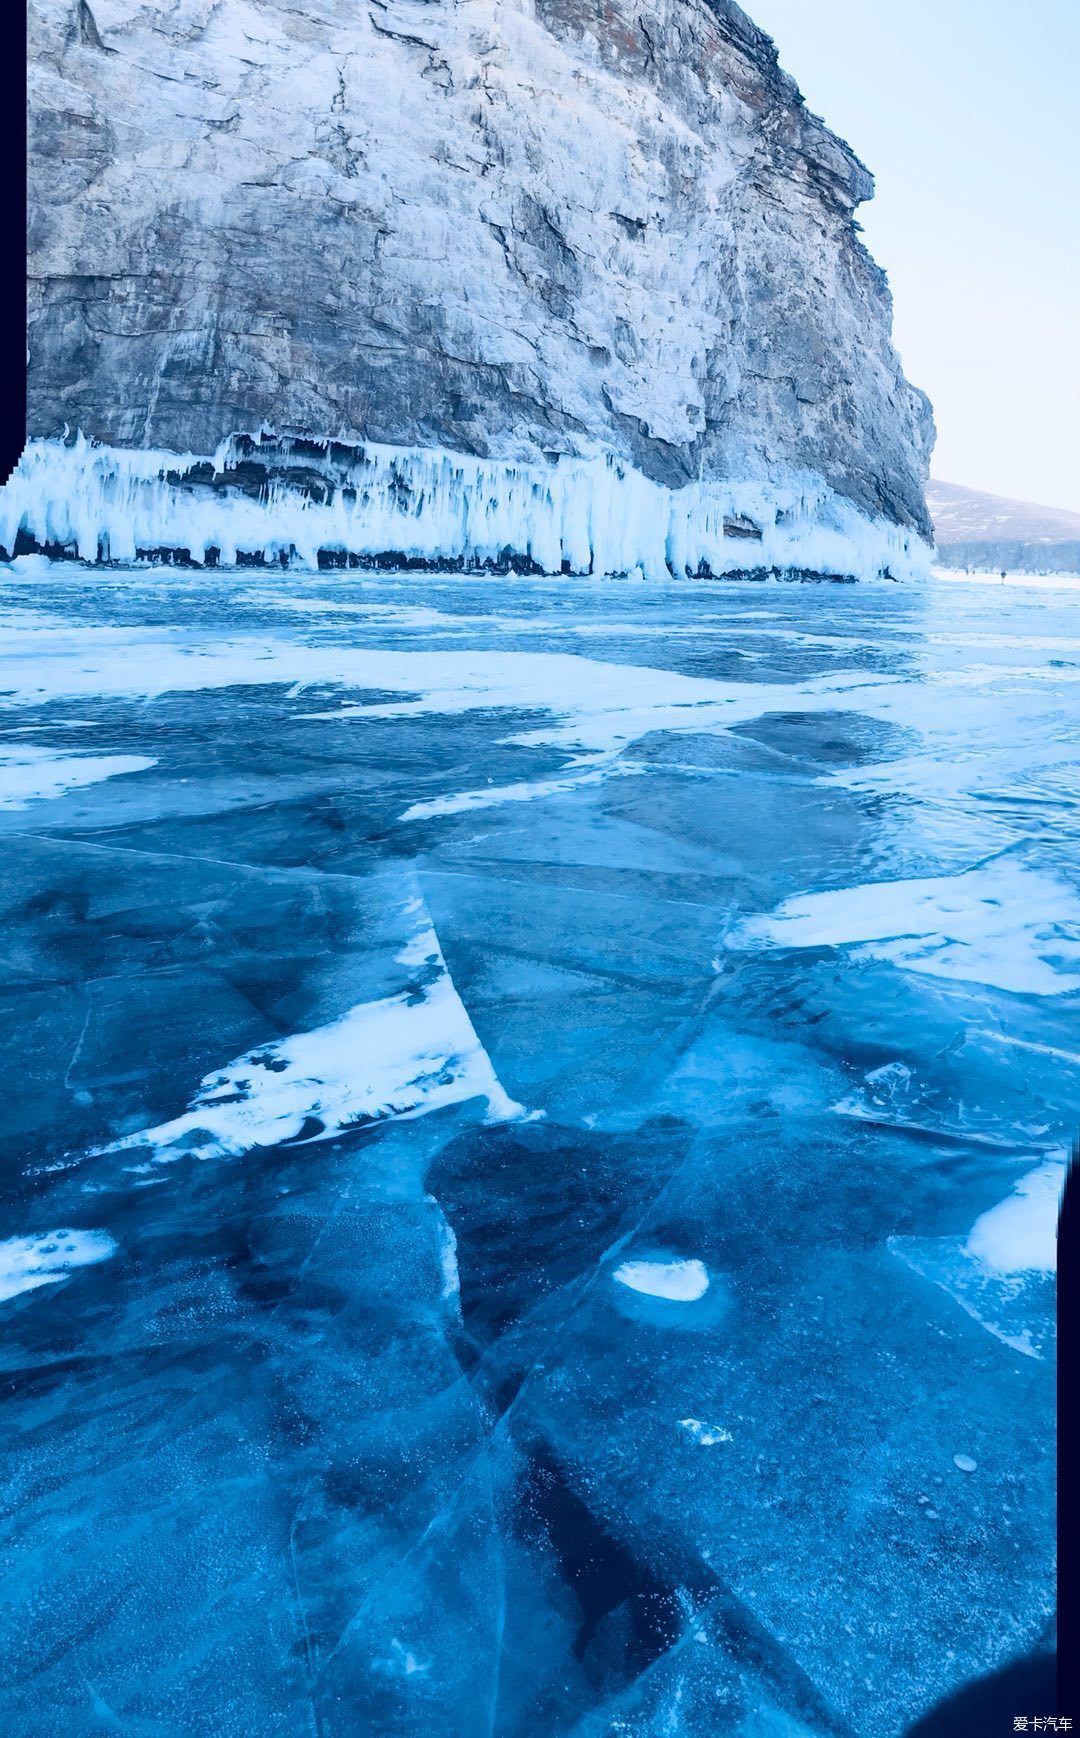 贝加尔湖蓝冰自驾,在光滑的冰面上摩擦摩擦.等游记正片上线.